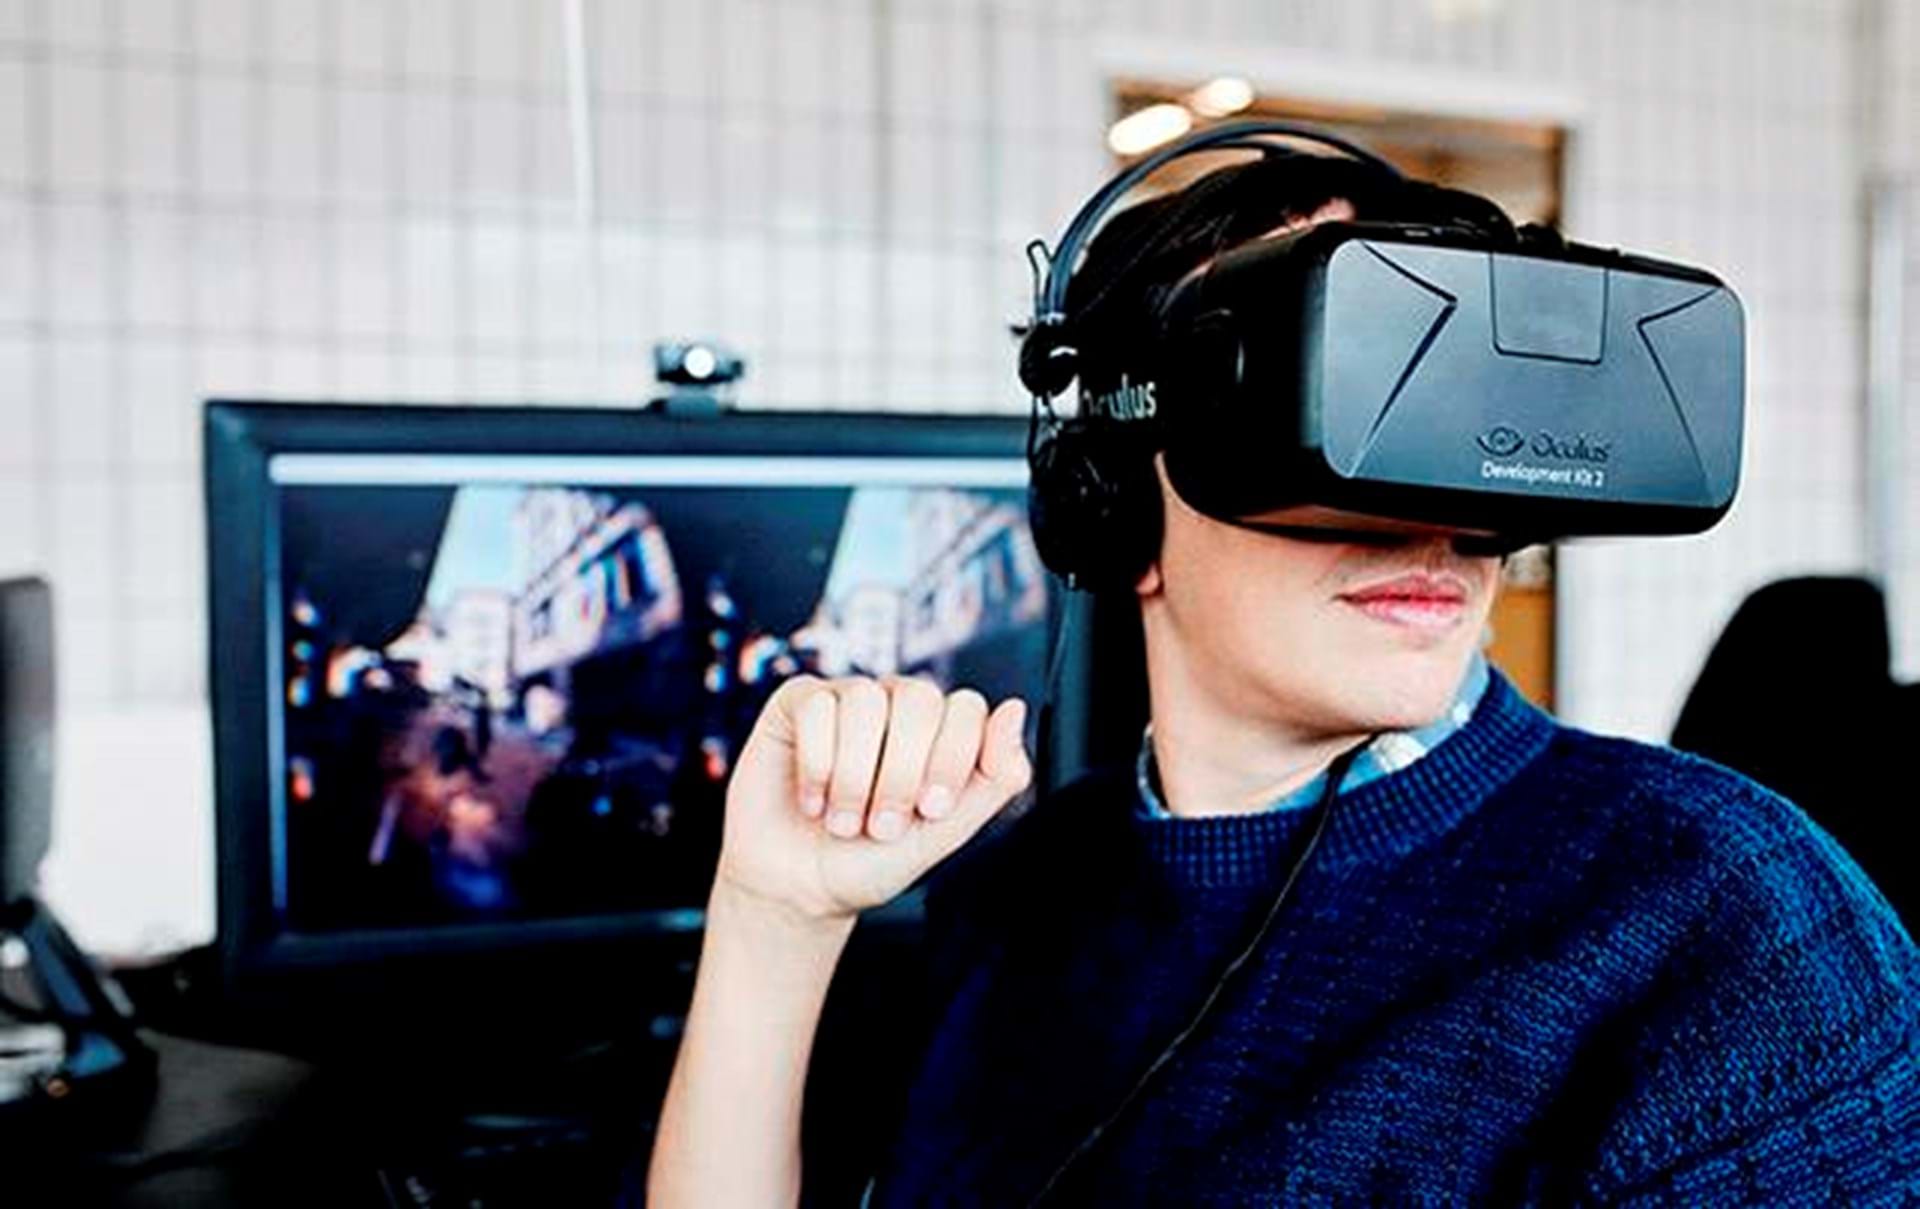 åndelig detaljer Kro Nu kommer iværksætter-centrum for virtual reality i Danmark: ”Denne  teknologi vil ændre verden” - Euroman